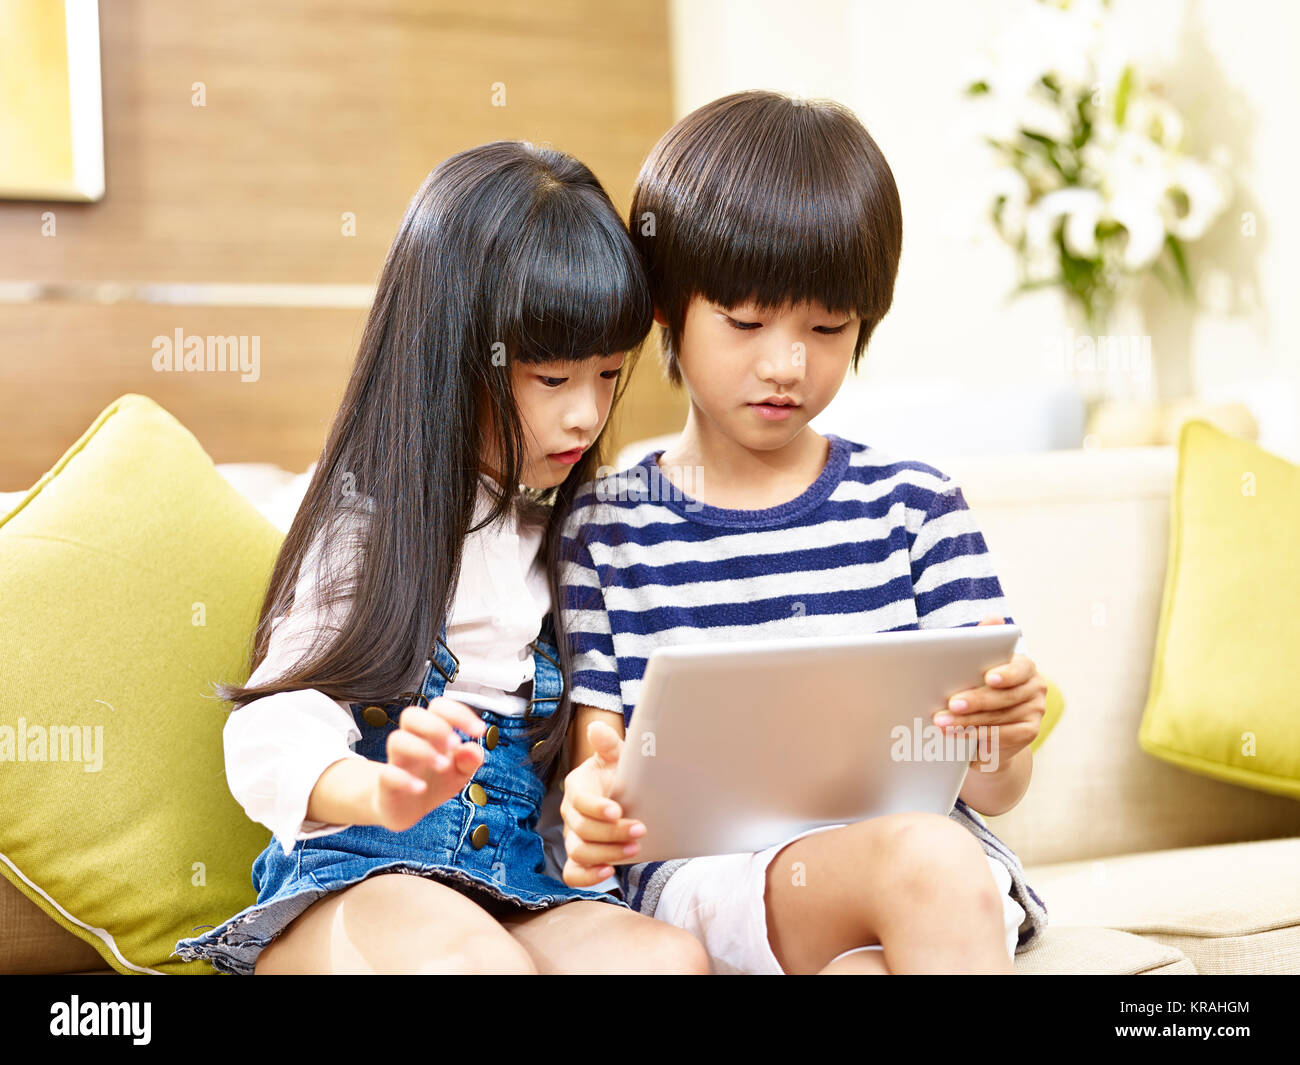 Frère et soeur asiatique sitting on sofa looking at digital tablet ensemble. Banque D'Images